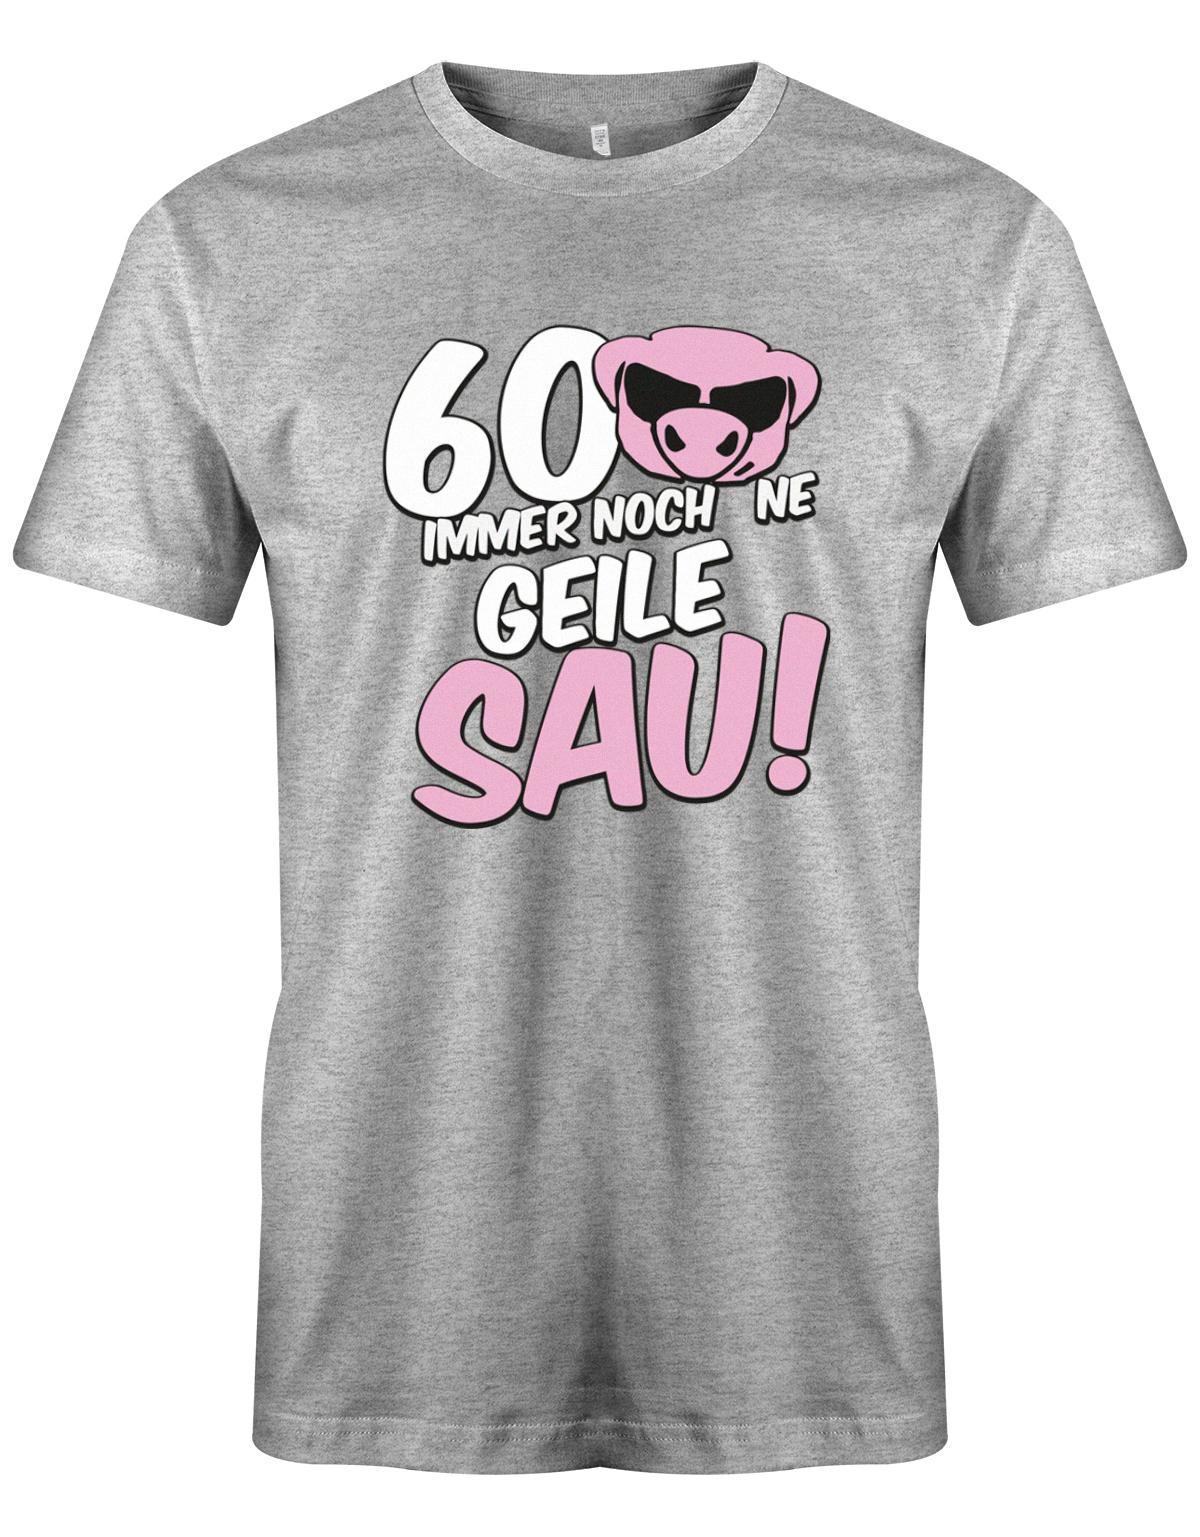 Lustiges T-Shirt zum 60 Geburtstag für den Mann Bedruckt mit 60 Immer noch 'ne geile Sau! Sau mit Sonnenbrille Grau